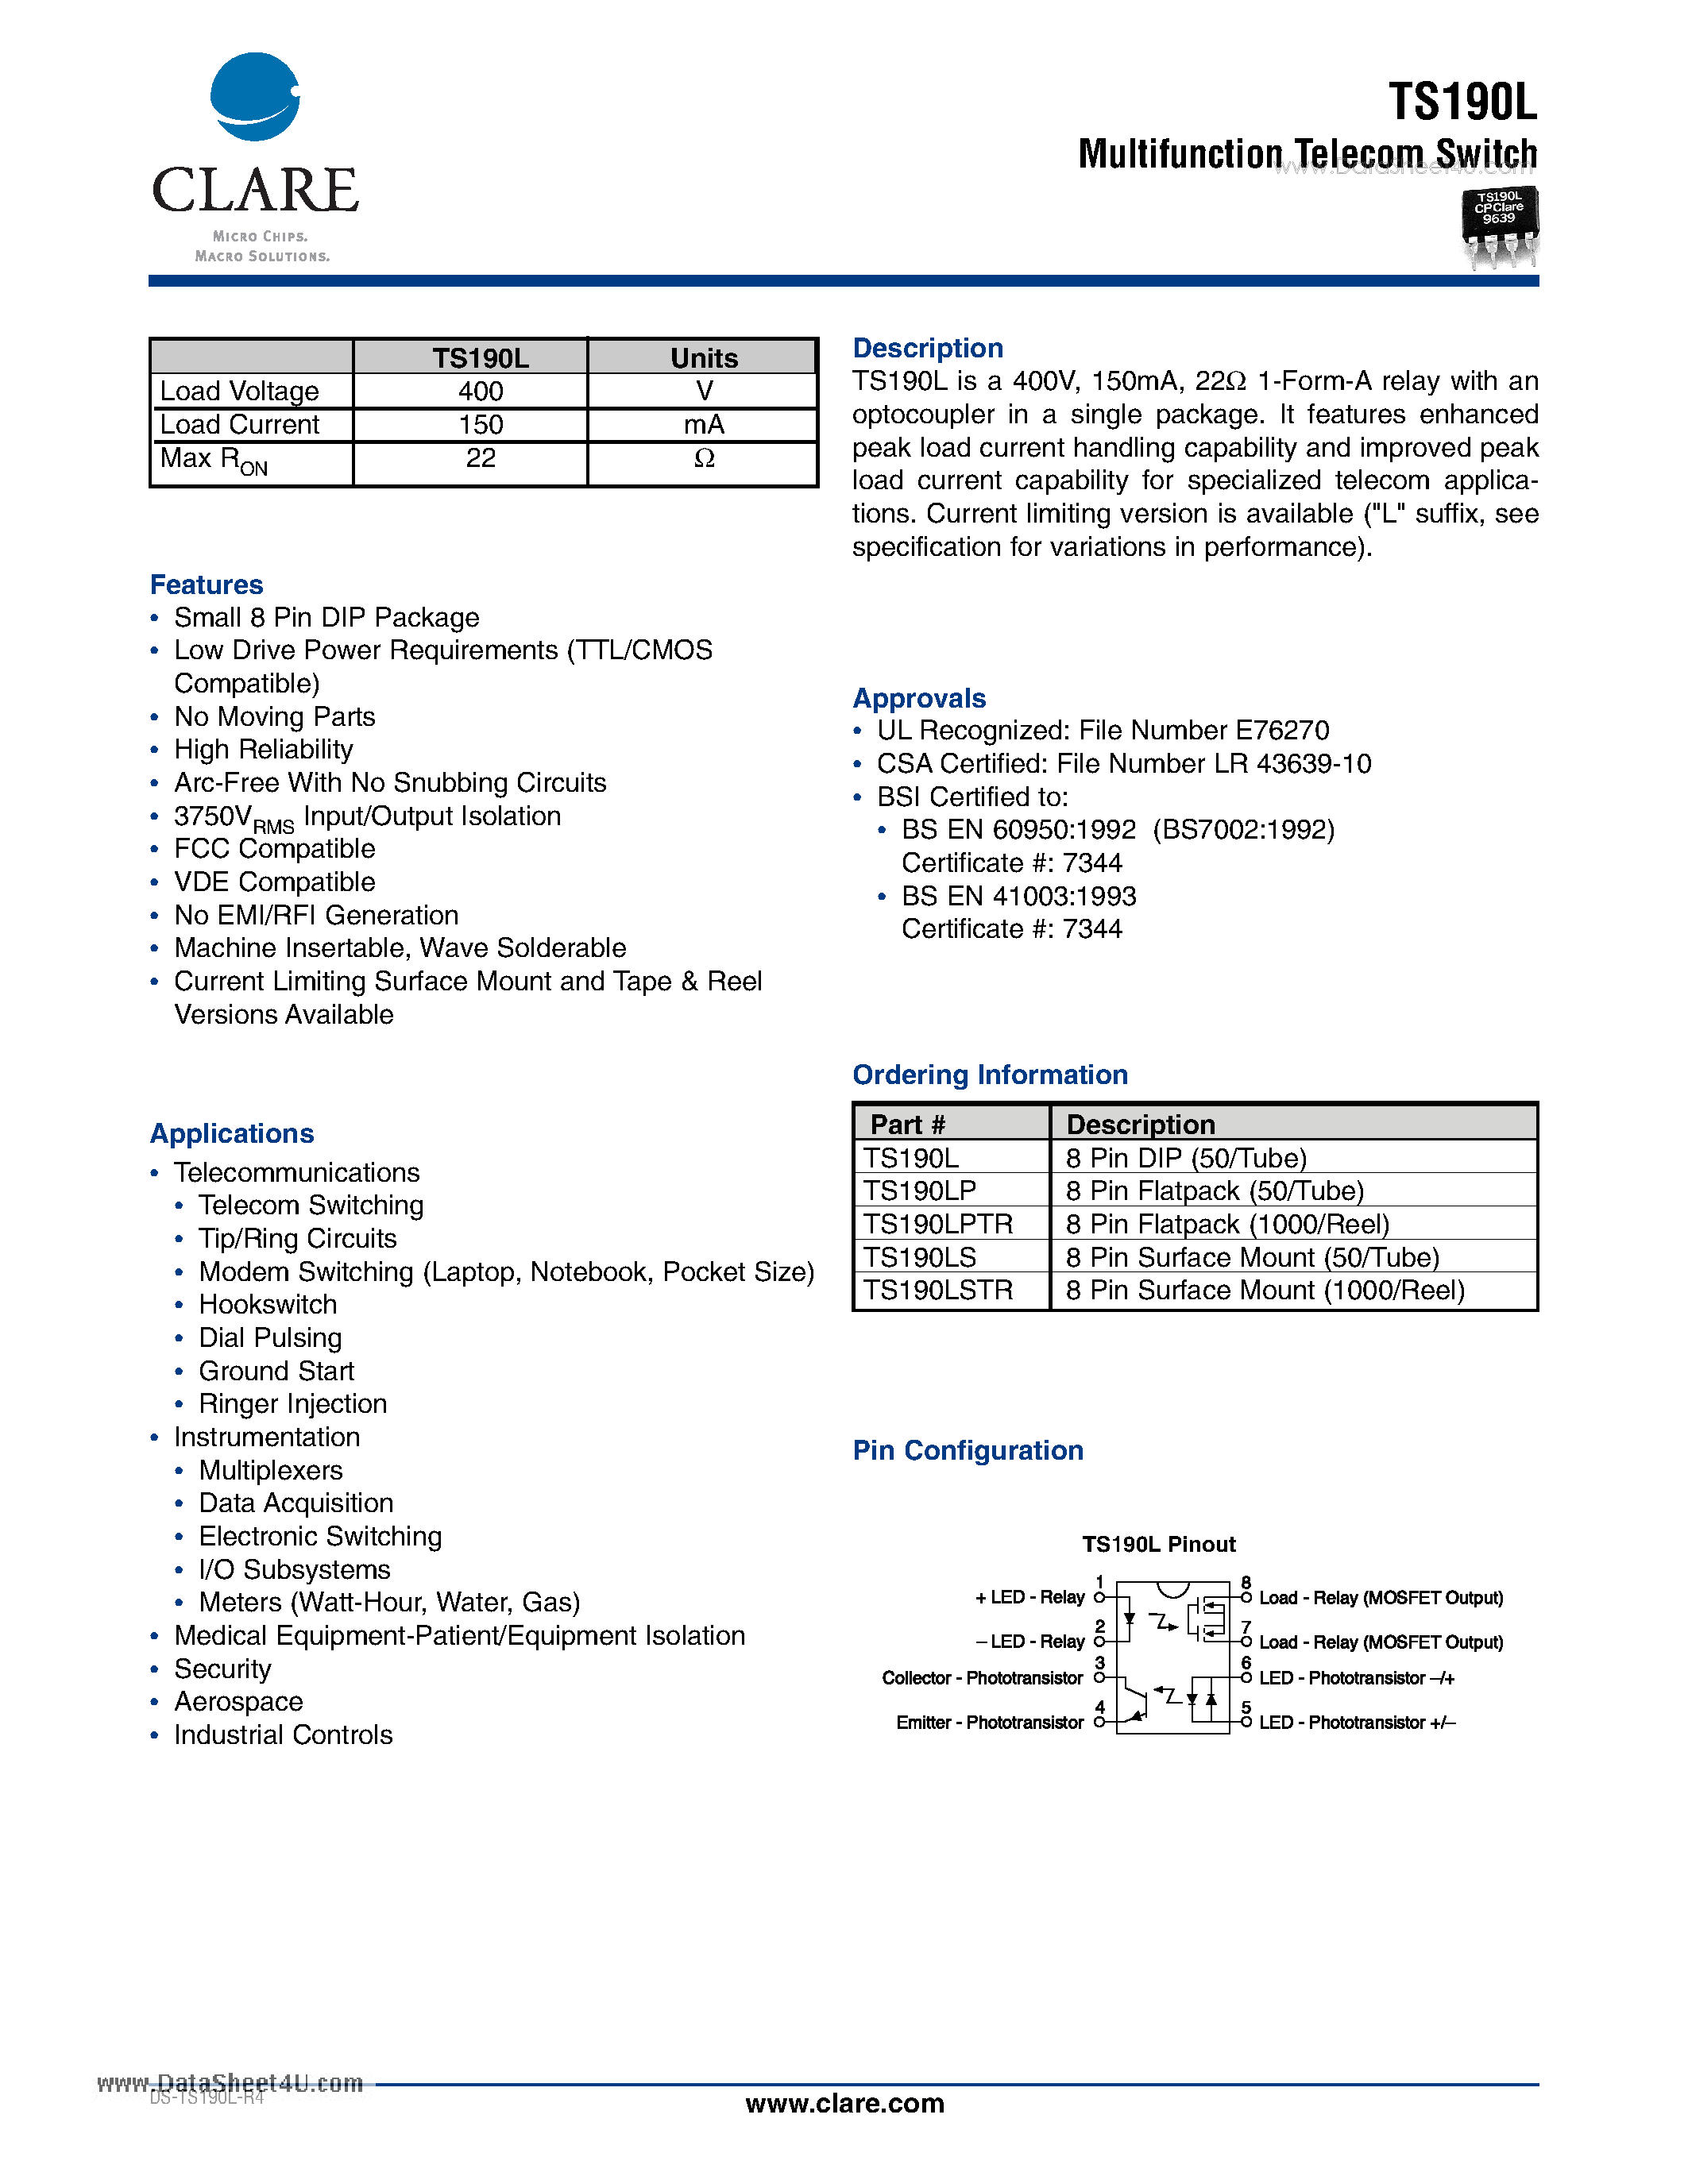 Datasheet TS190L - Multifunction Telecom Switch page 1